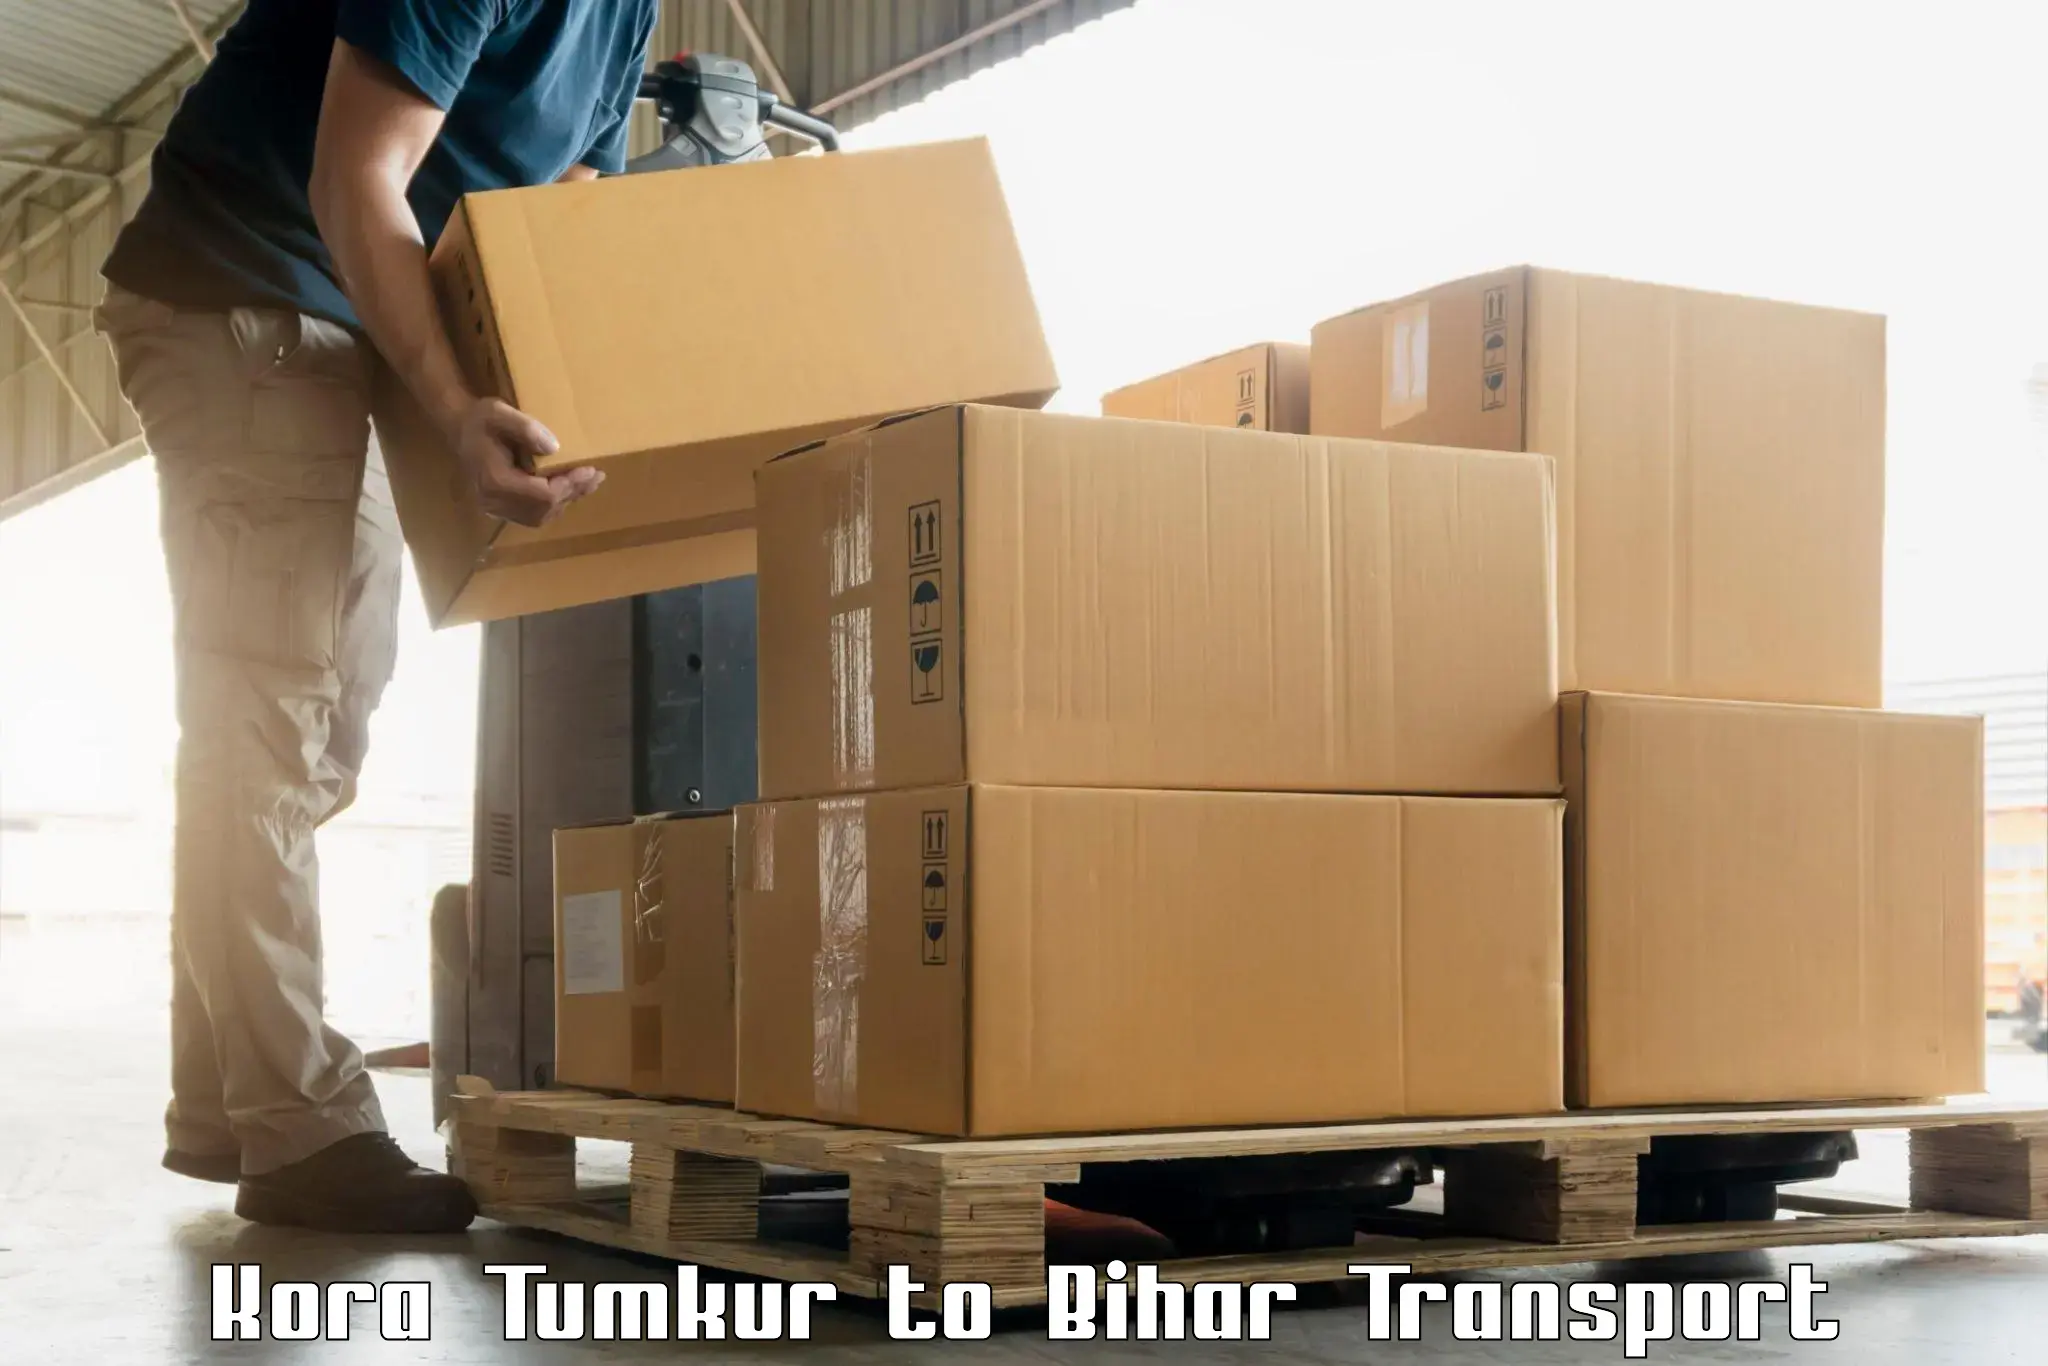 Pick up transport service Kora Tumkur to Khizarsarai